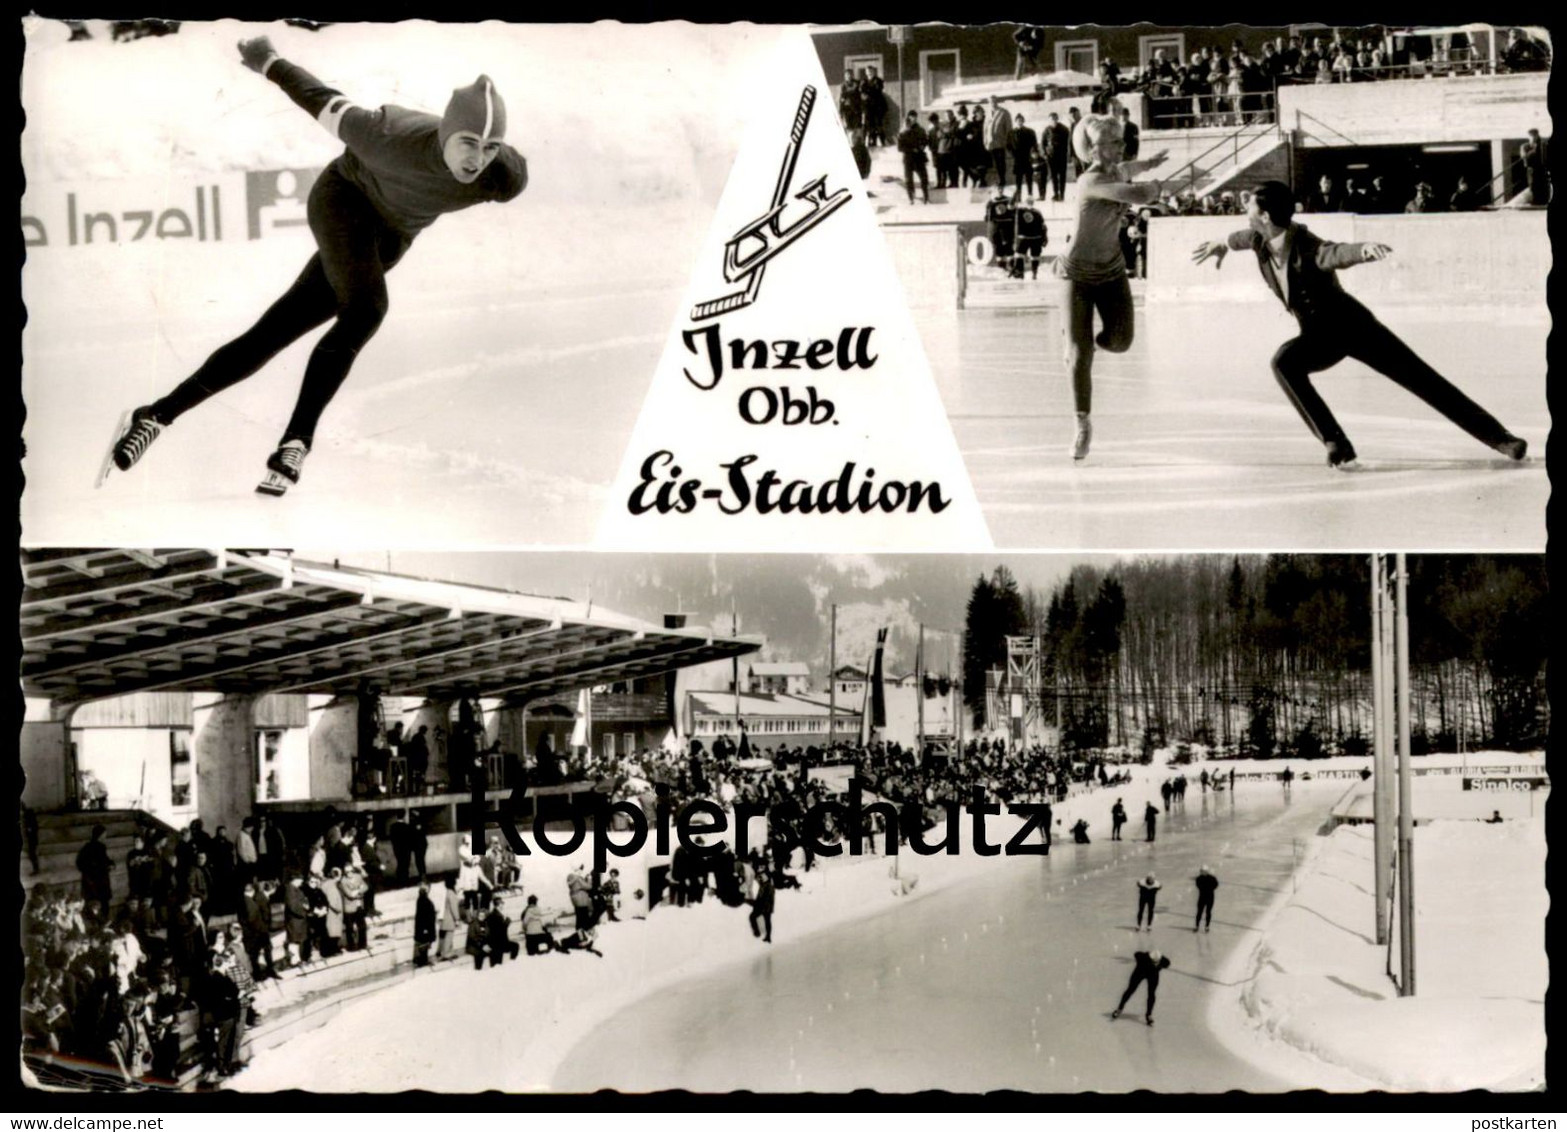 ALTE POSTKARTE INZELL BAYERN EIS-STADION EISSTADION Eislaufen Ice Skating Patinage AK Postcard Ansichtskarte Cpa - Eiskunstlauf